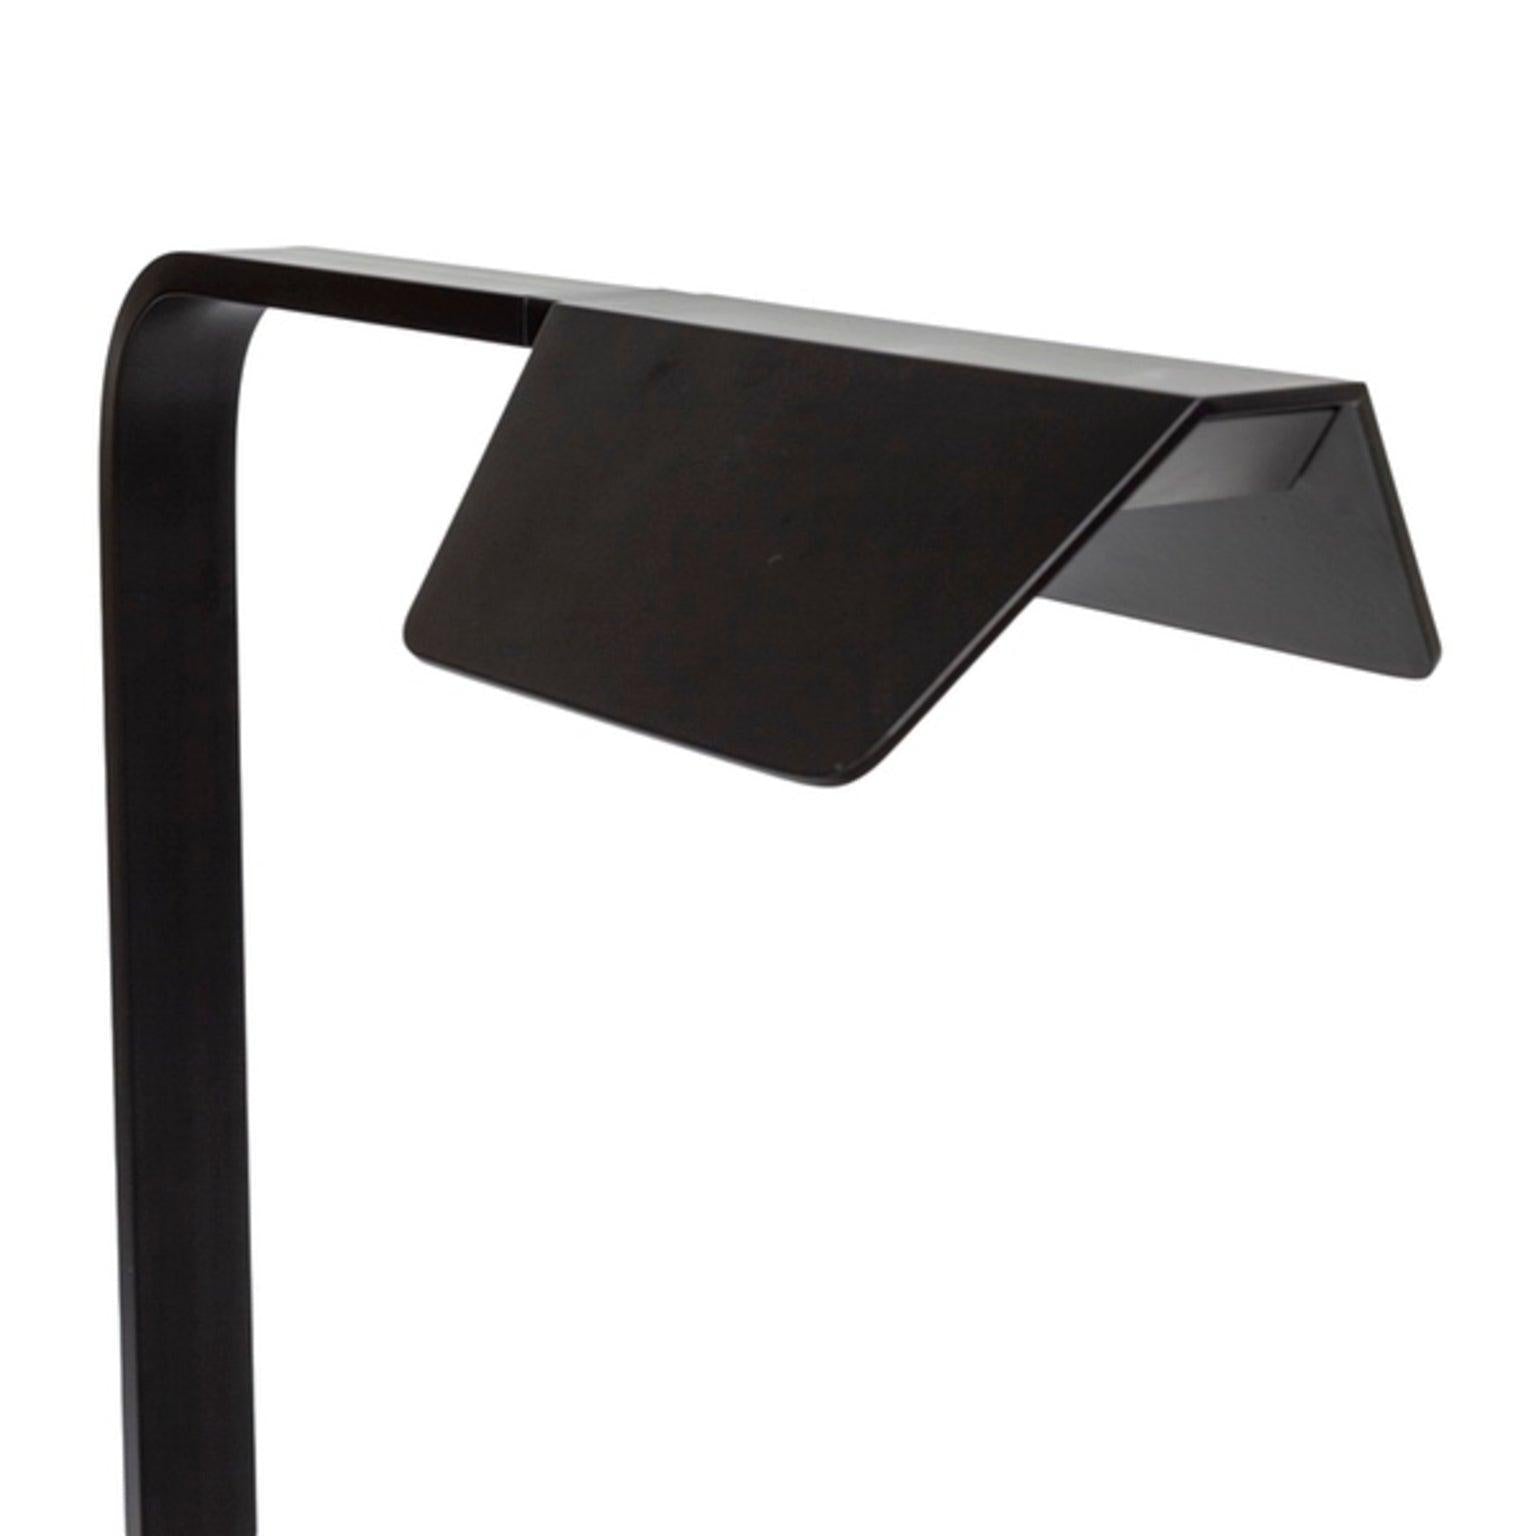 Black Aluminium Table Lamp